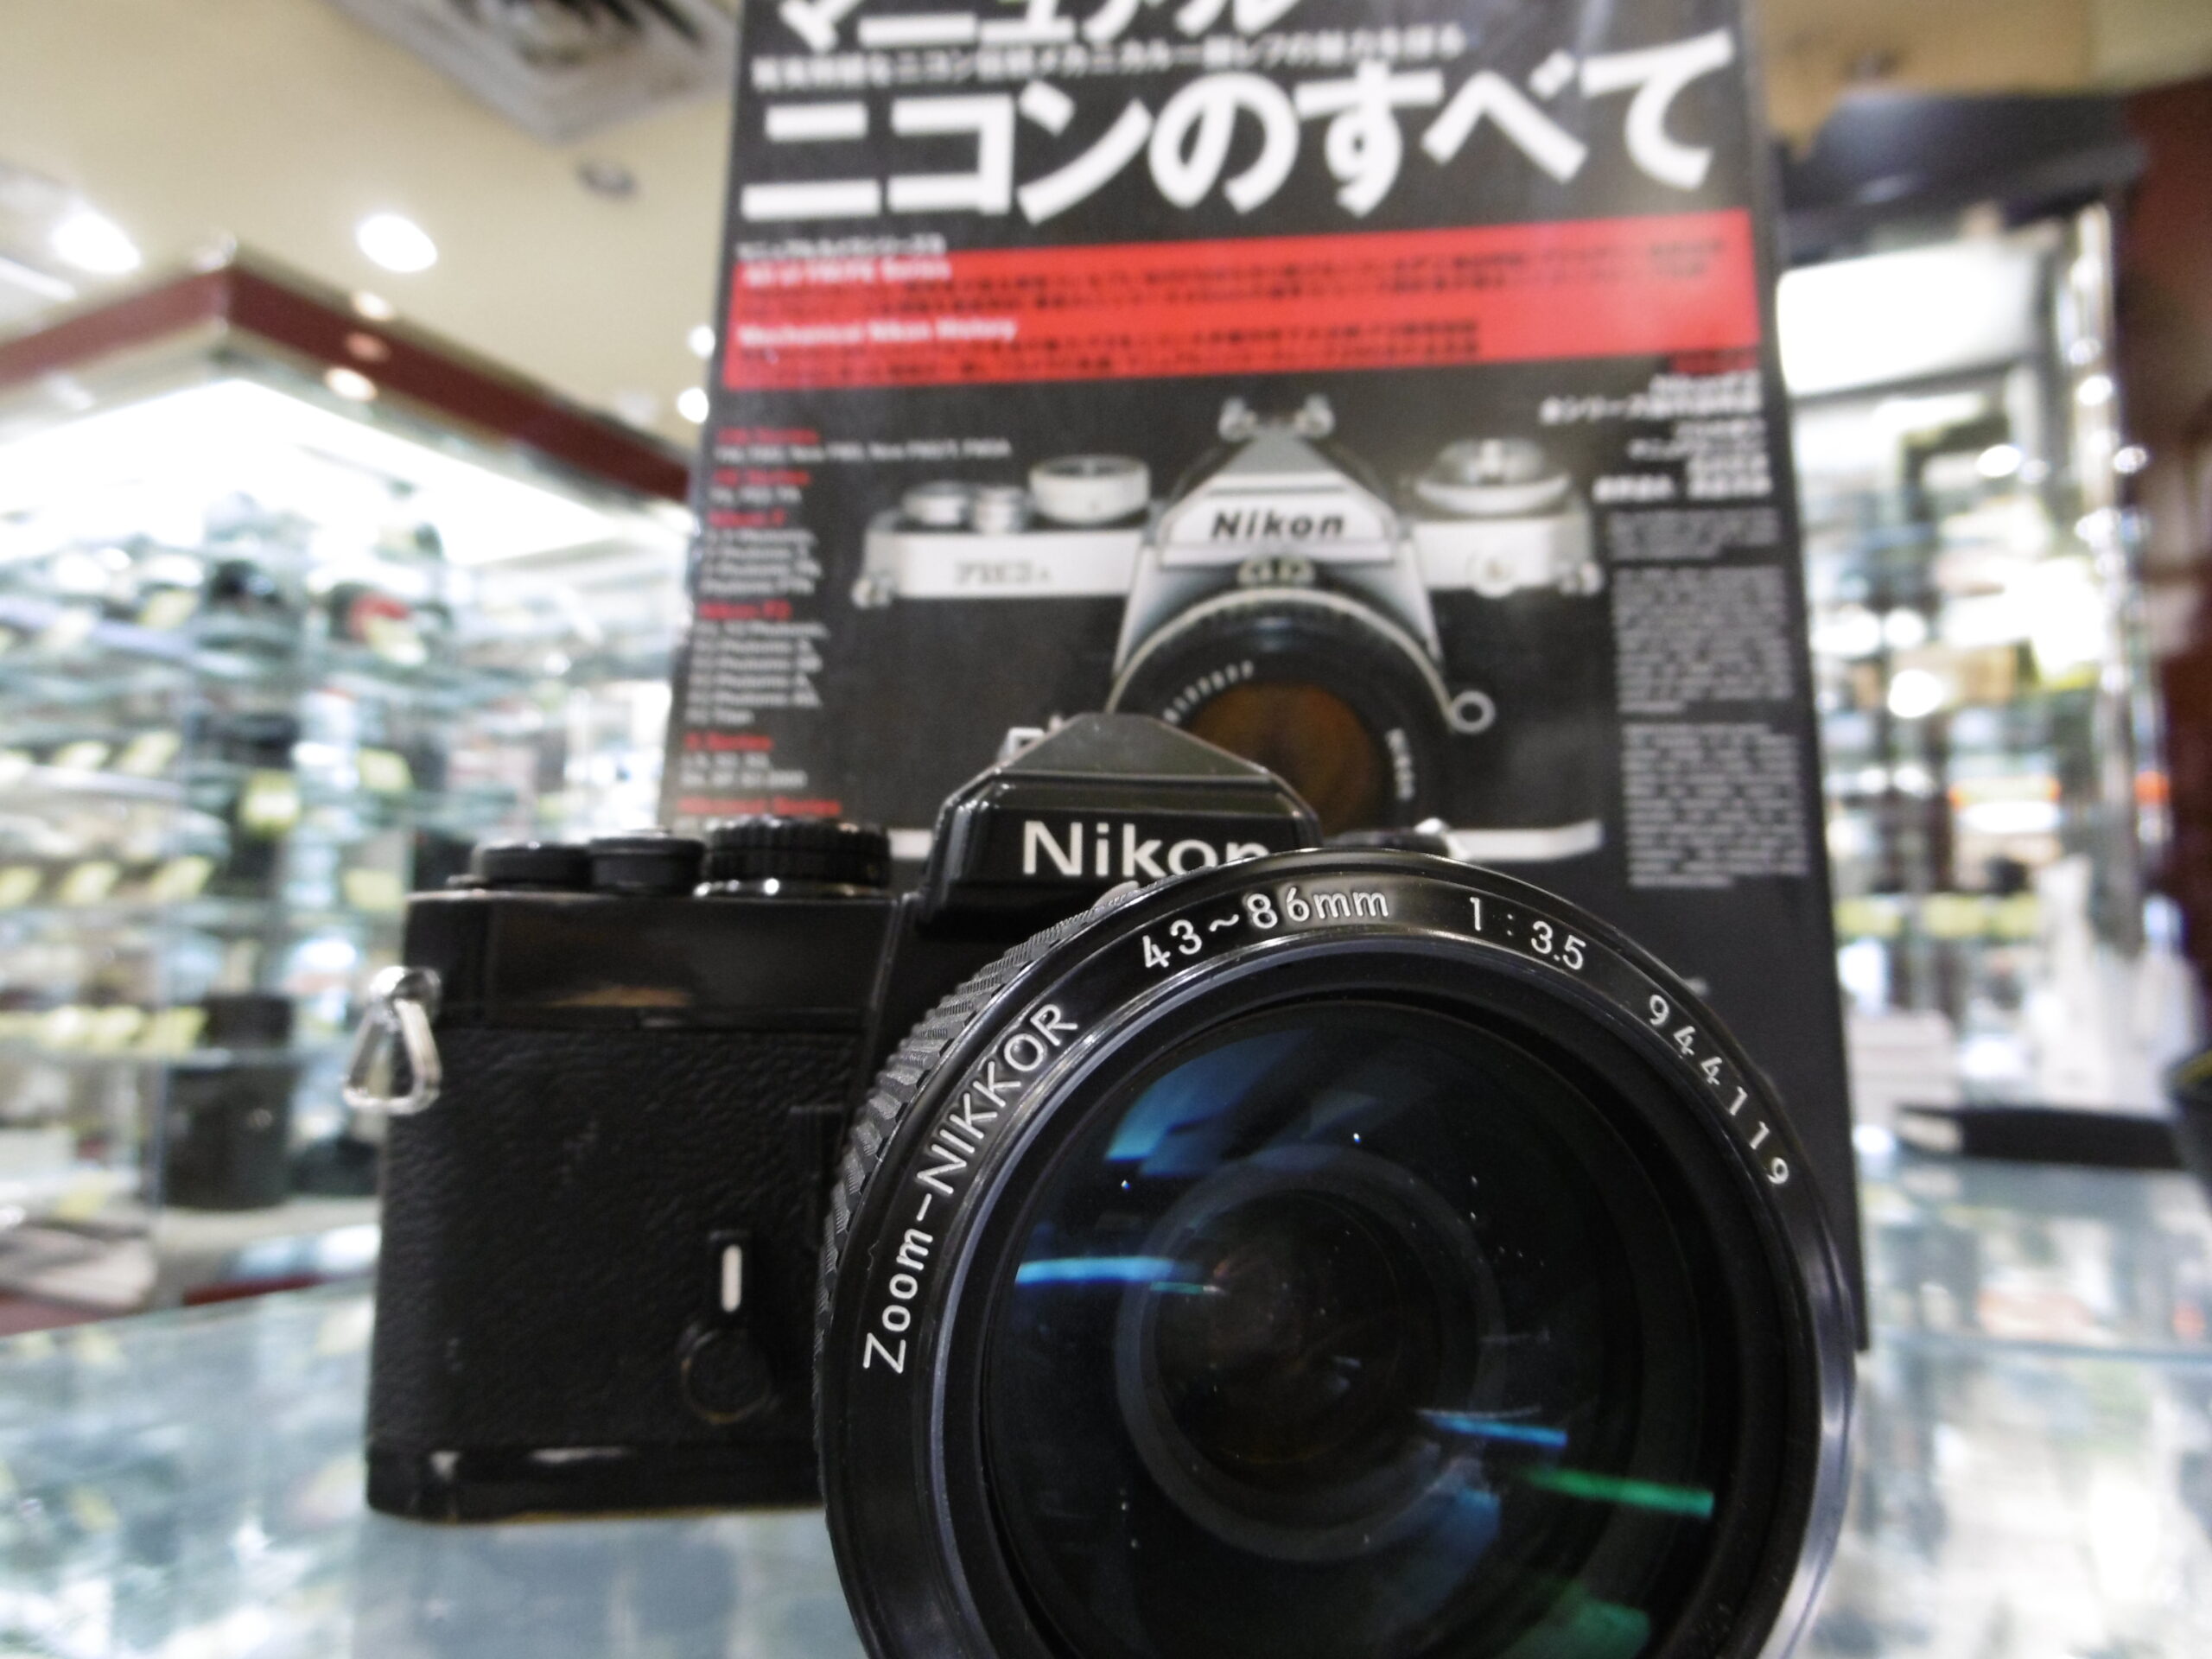 ニコンFM2 old nikkor C 43mm-86mm